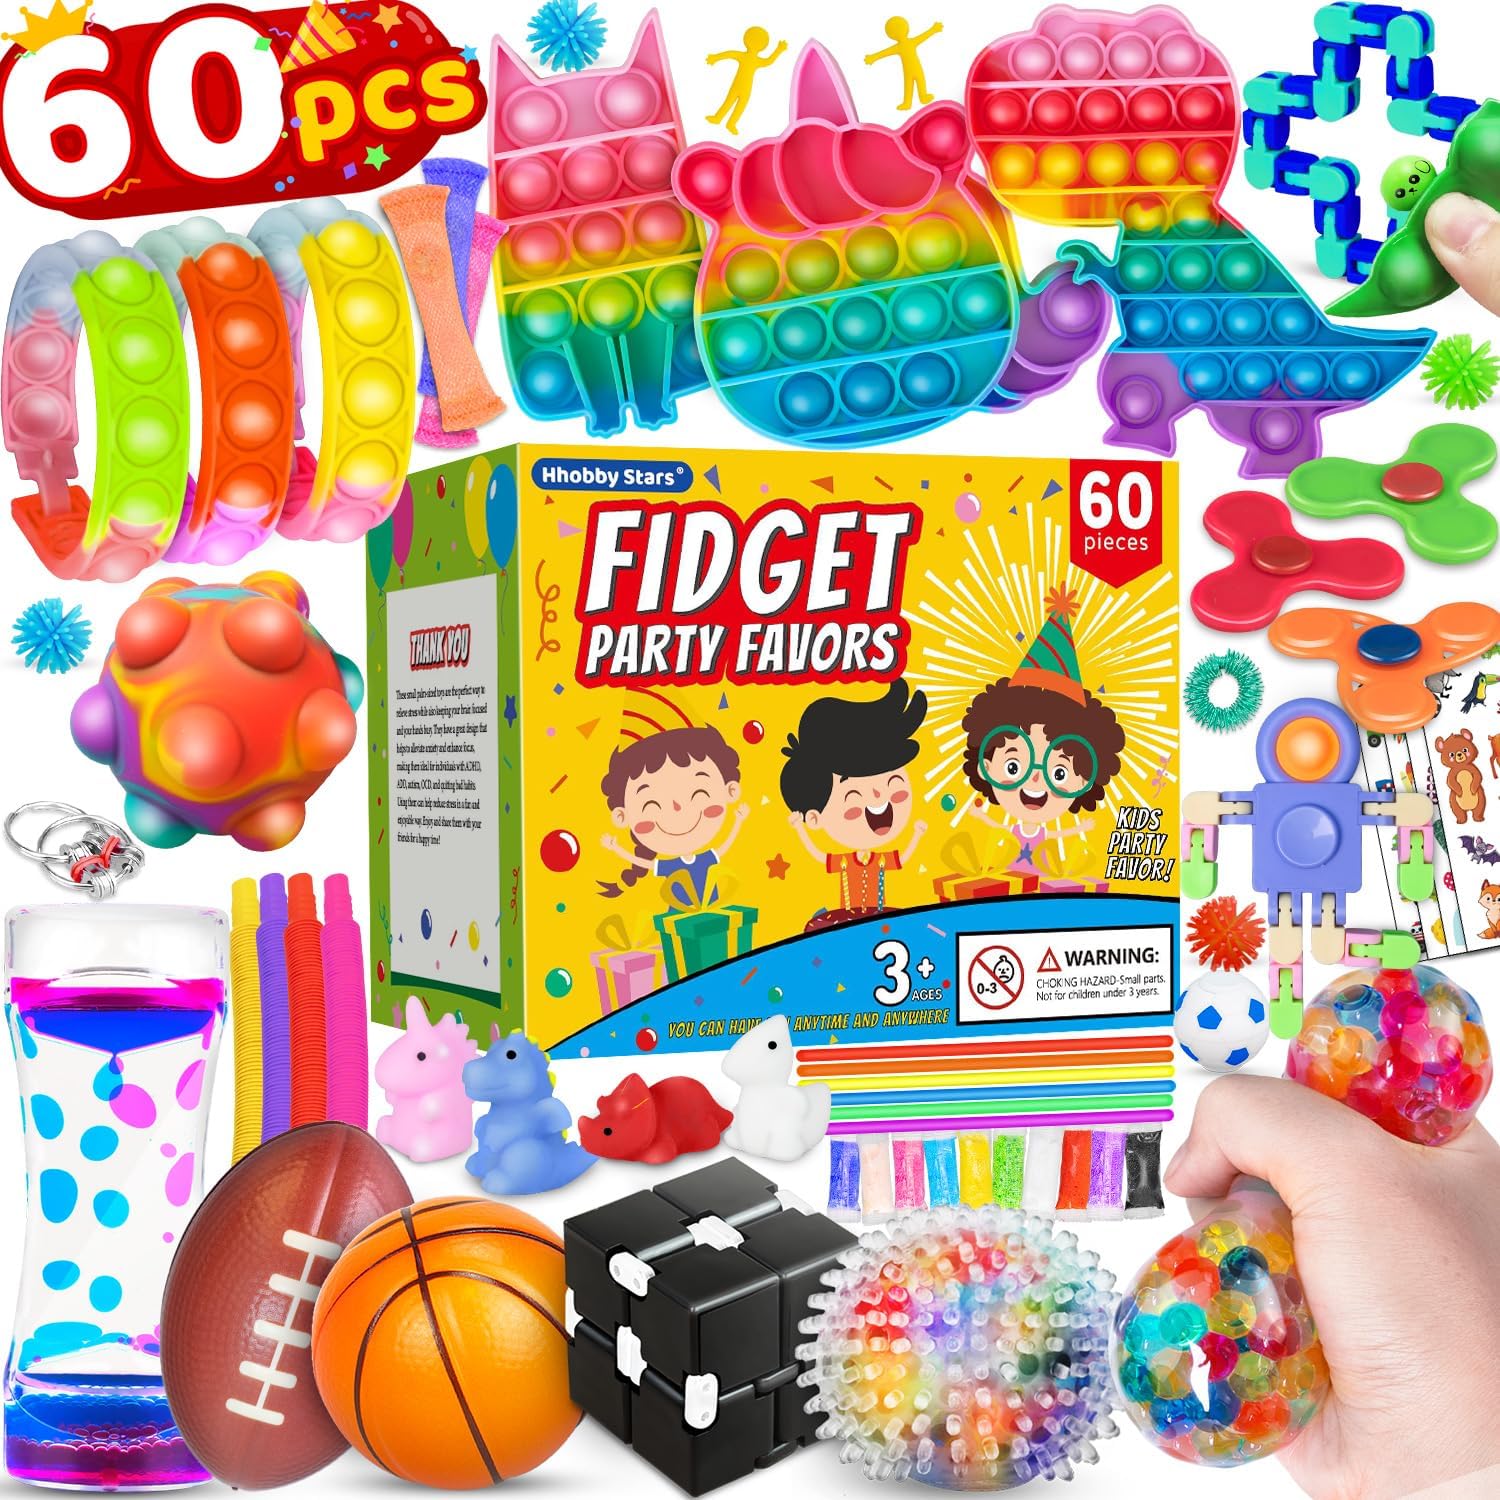 100 Pcs Fidget Toys Pack, Party Favors Carnival Oman